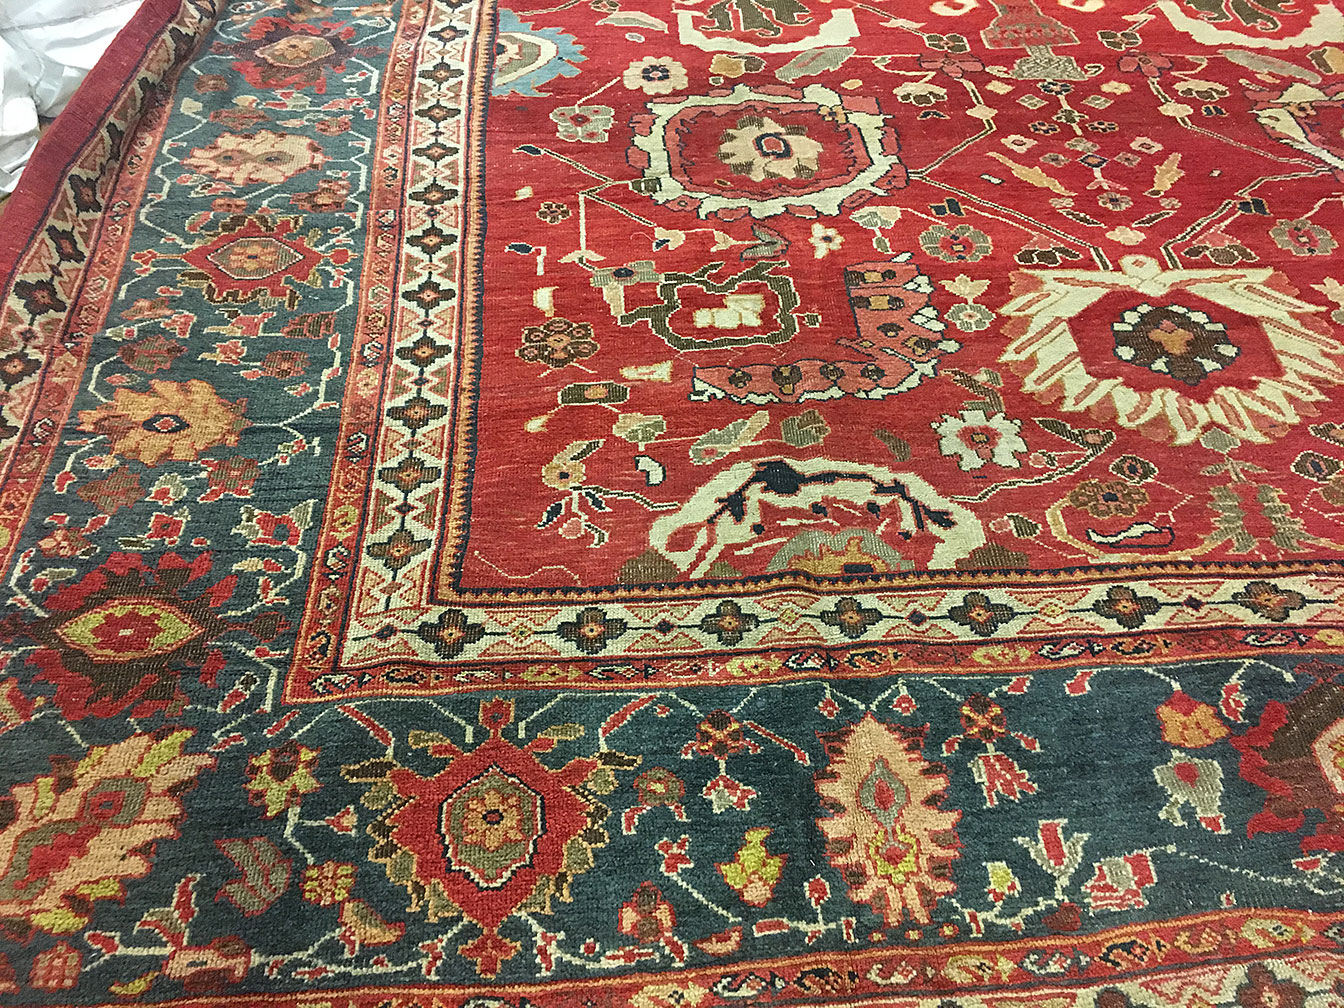 Antique sultan abad Carpet - # 53031